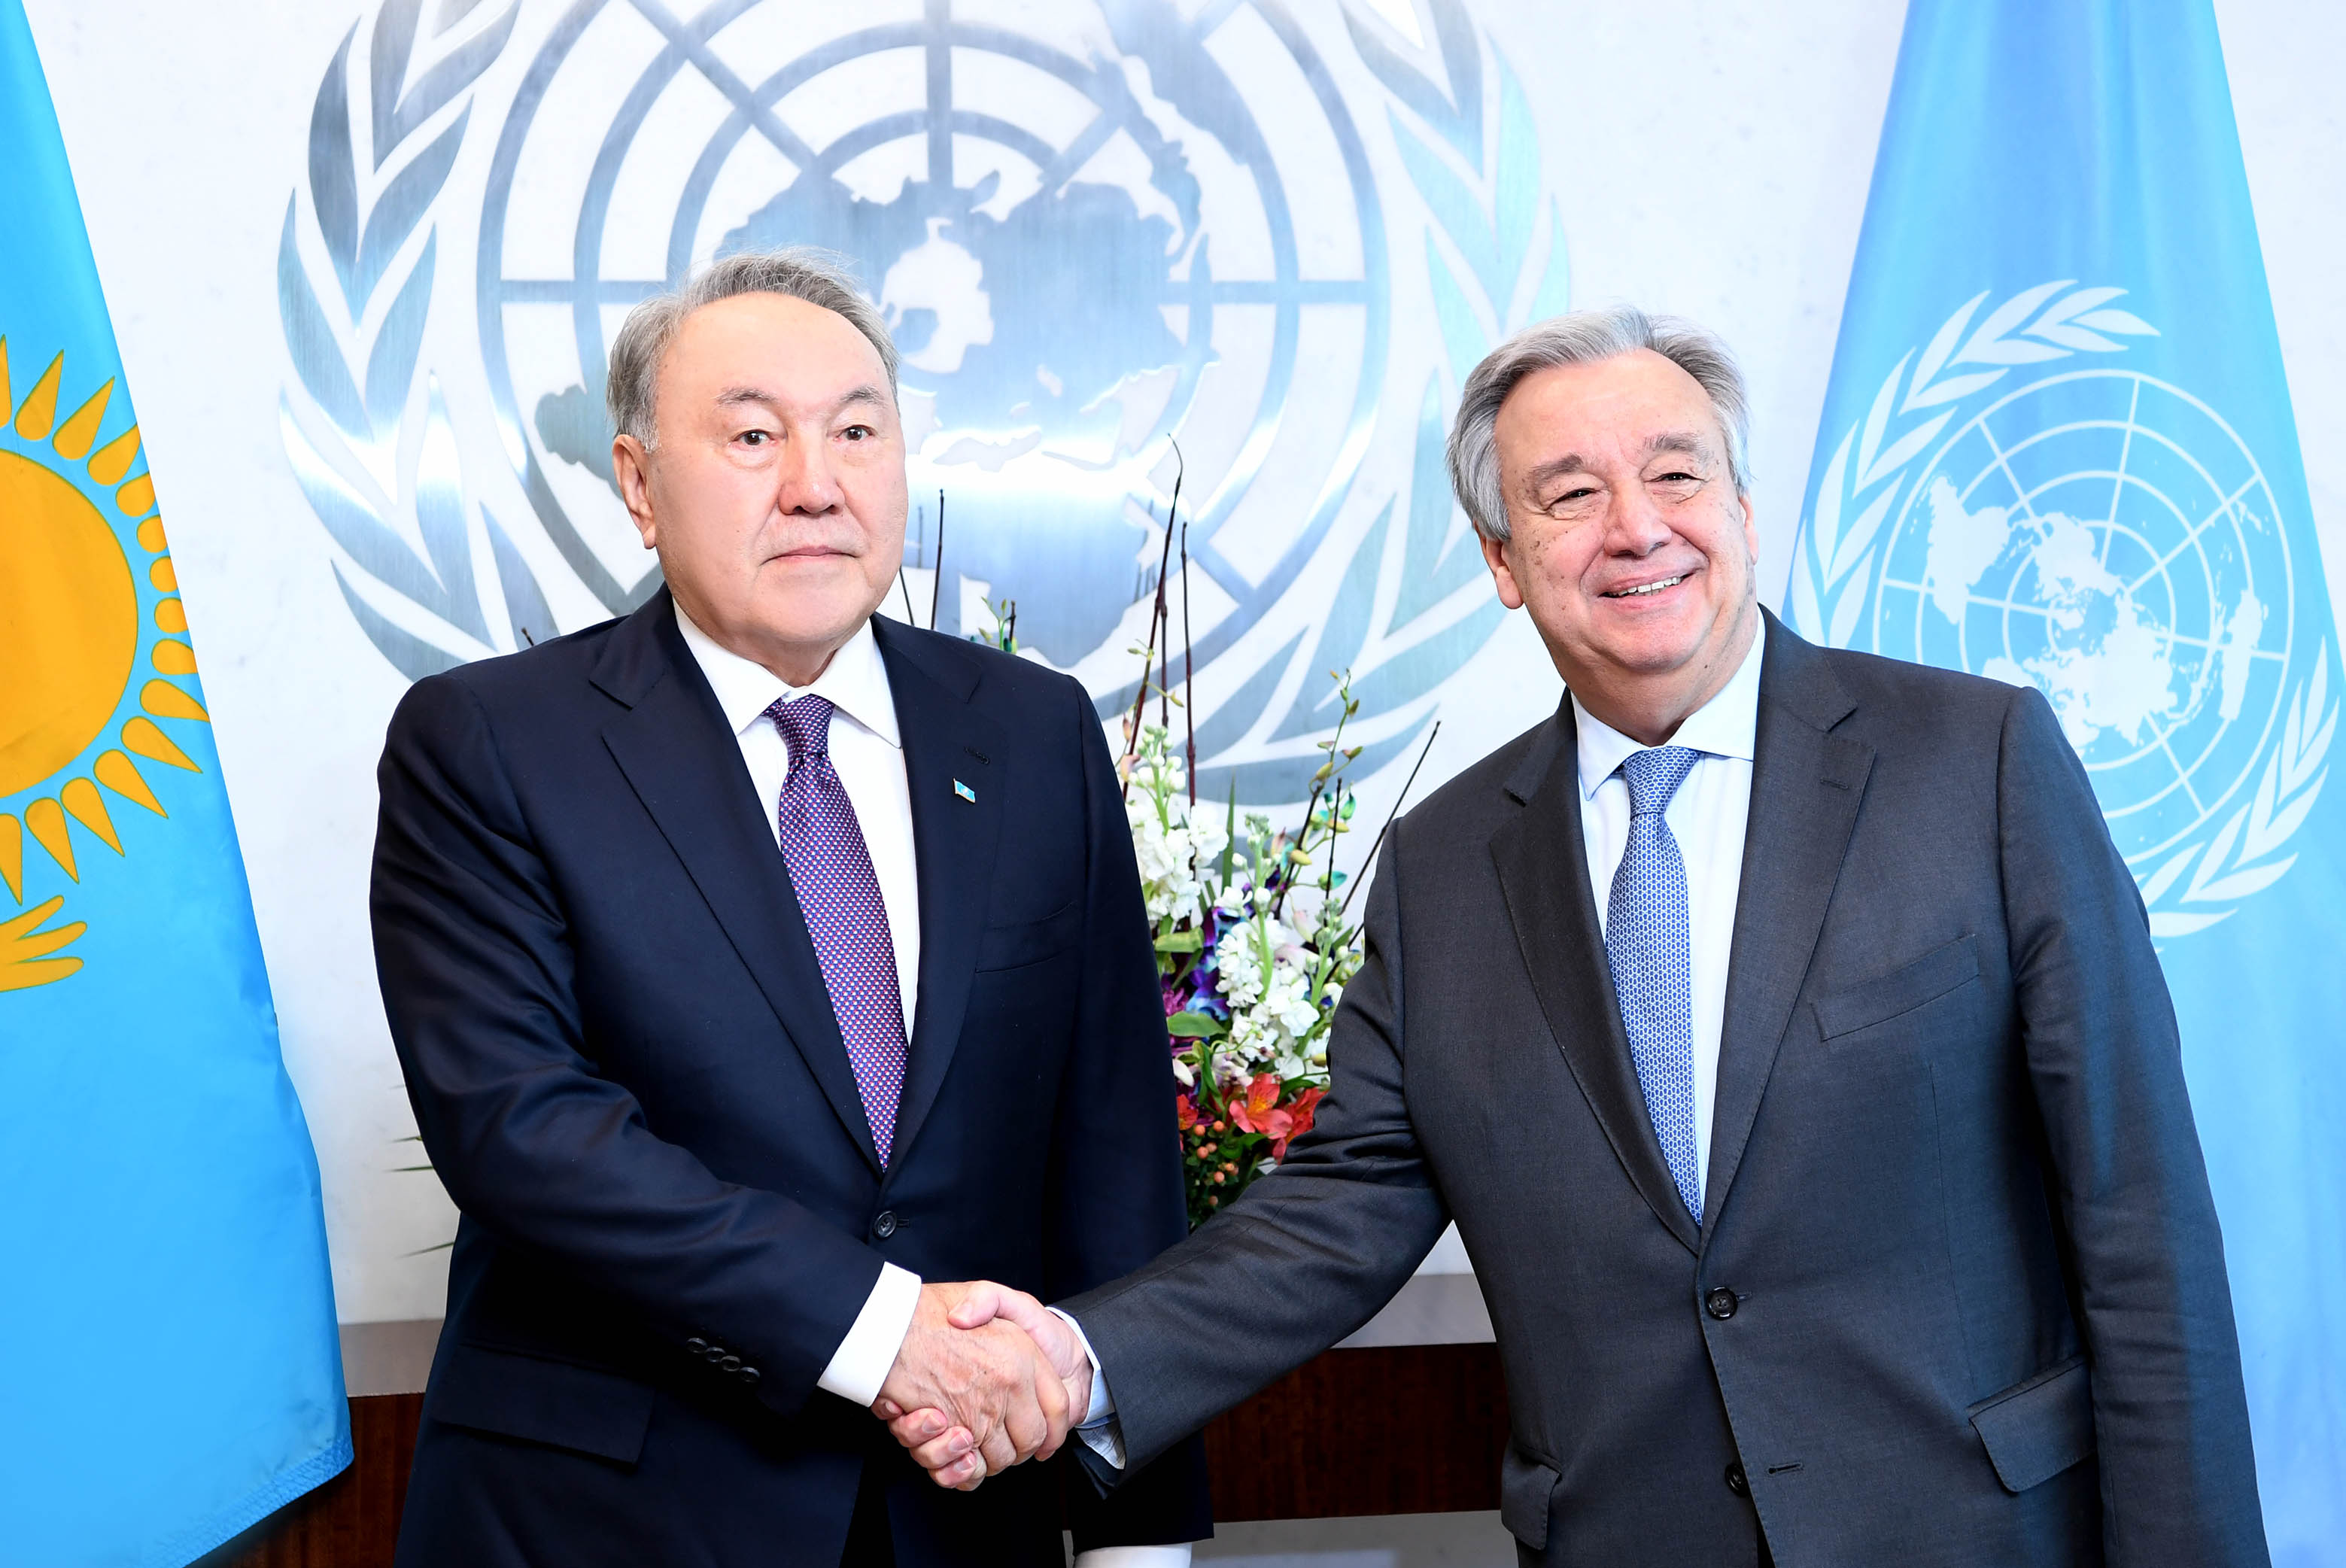 Kazakh President meets with UN Secretary-General, Antonio Guterres